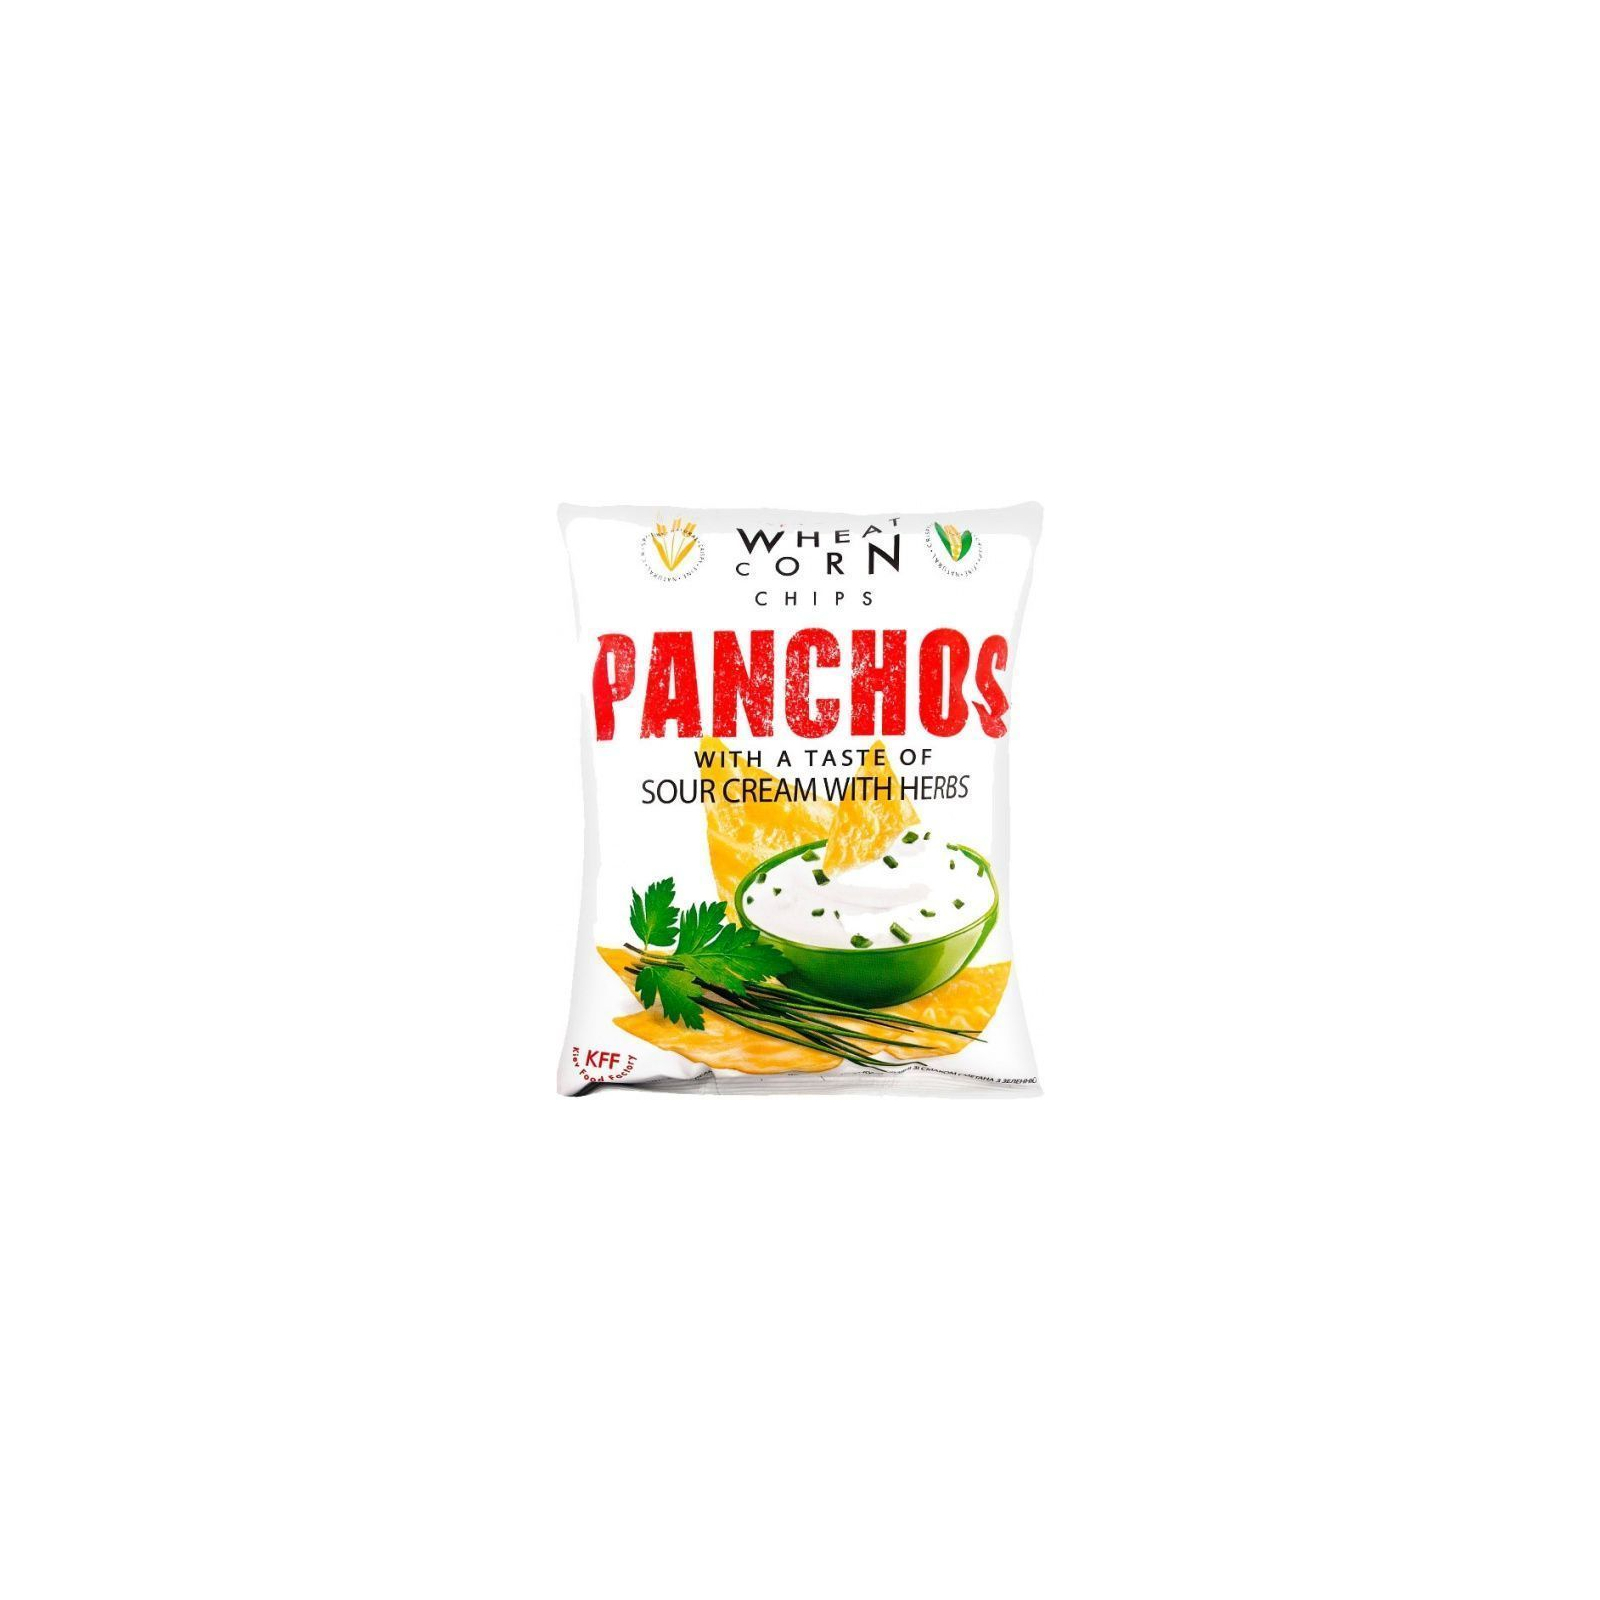 Чіпси Panchos зі смаком сметани та зелені 82 г (4820186190199)